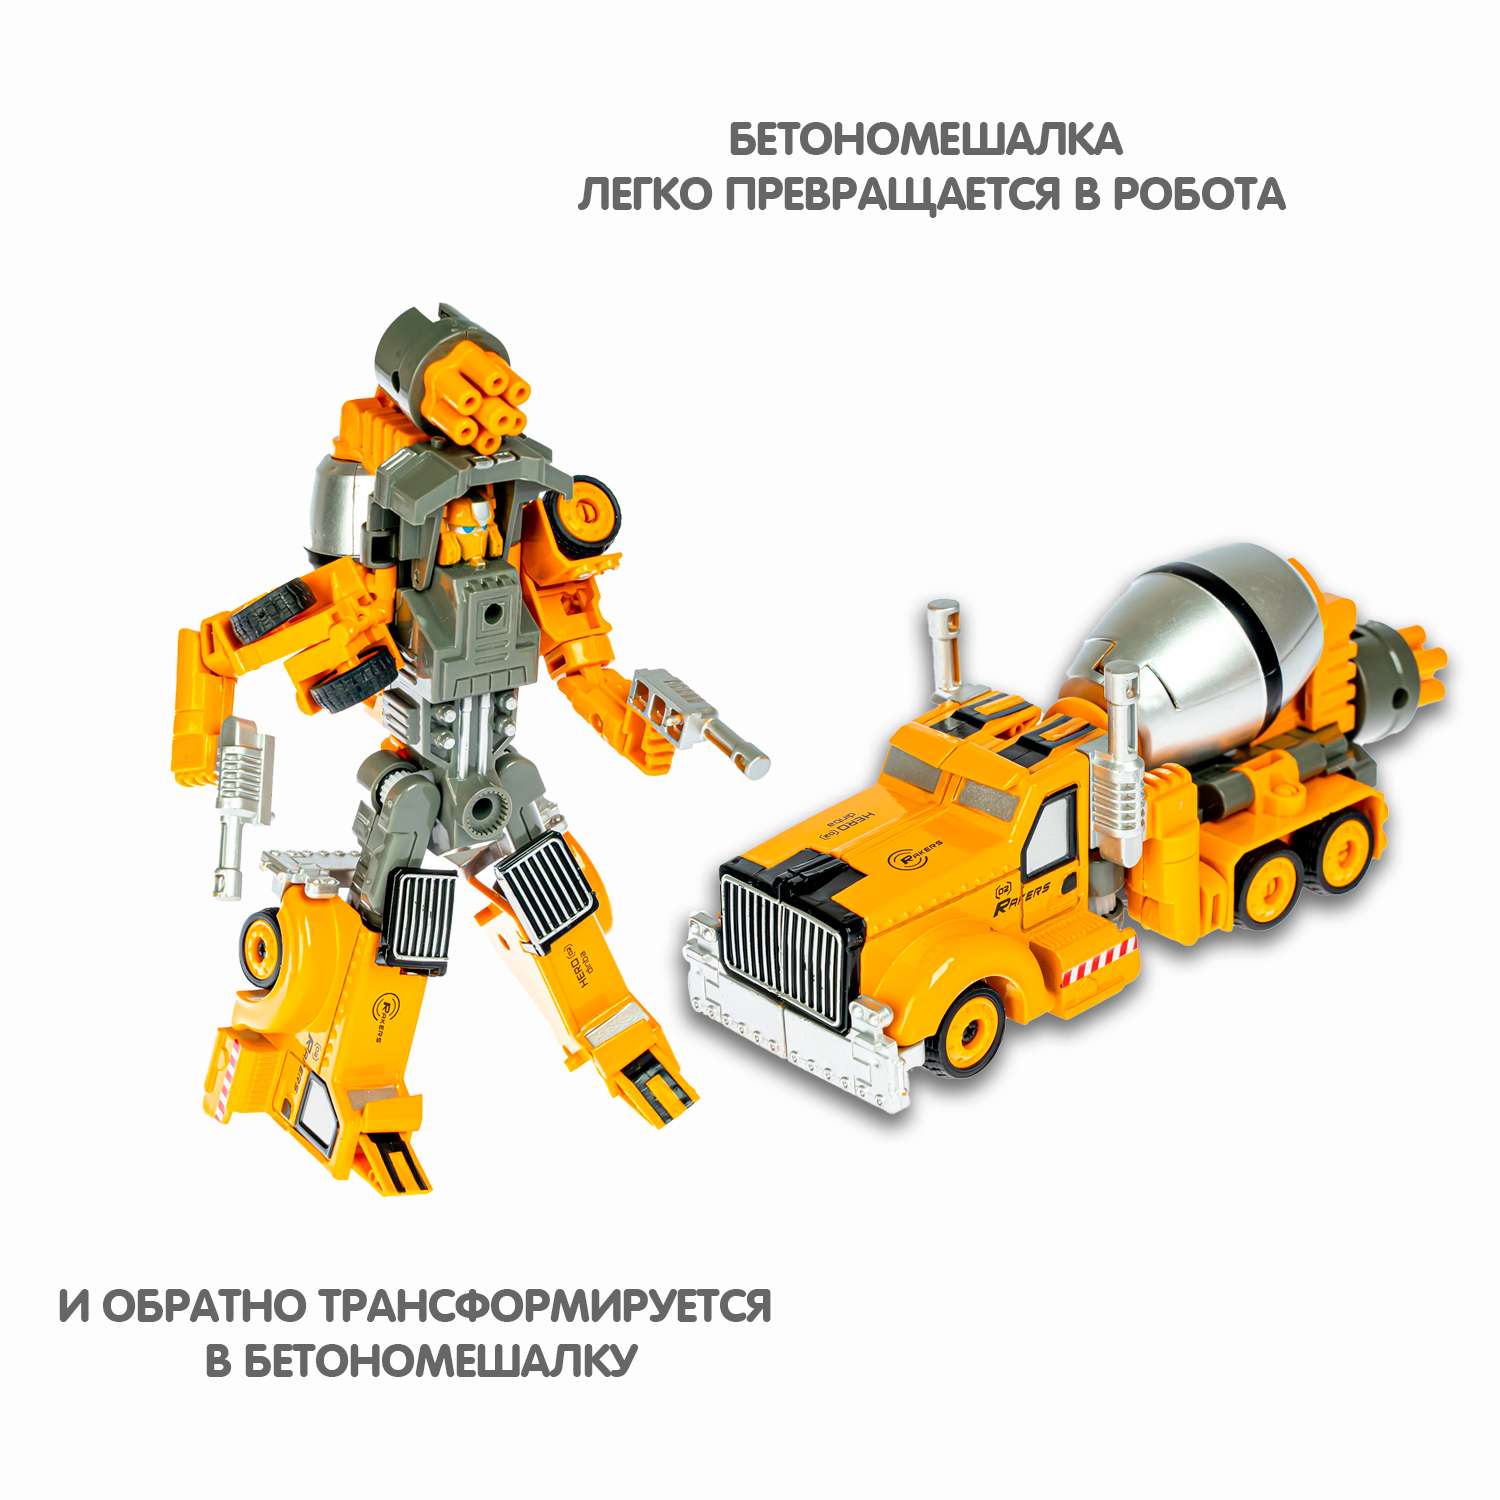 Трансформер BONDIBON BONDIBOT 2в1 робот-бетономешалка с металлическими деталями - фото 7